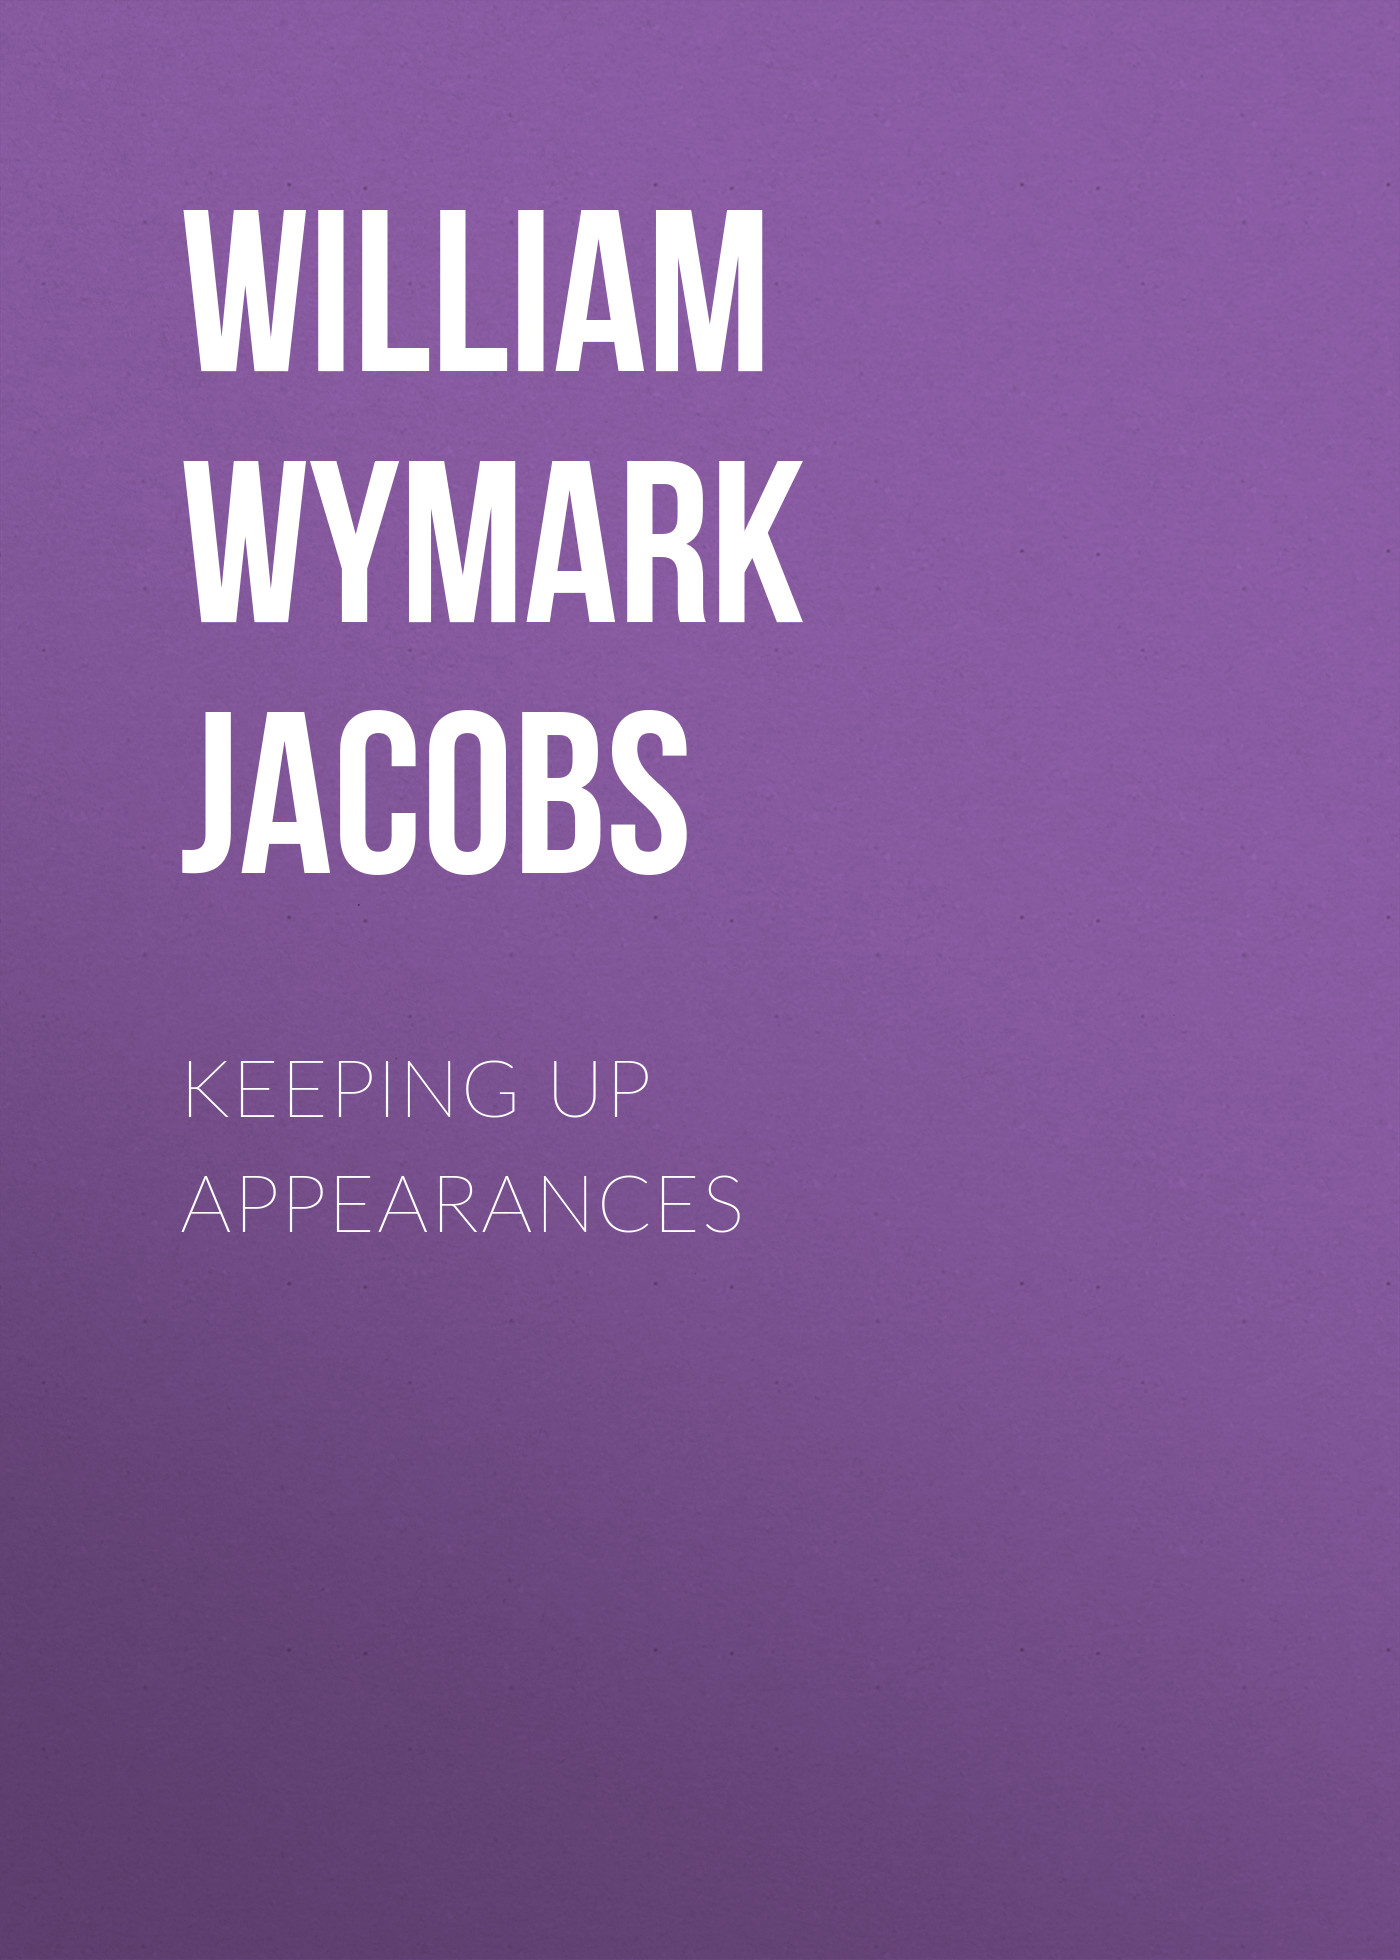 Книга Keeping Up Appearances из серии , созданная William Wymark Jacobs, может относится к жанру Зарубежная классика, Зарубежная старинная литература. Стоимость электронной книги Keeping Up Appearances с идентификатором 34841750 составляет 0 руб.